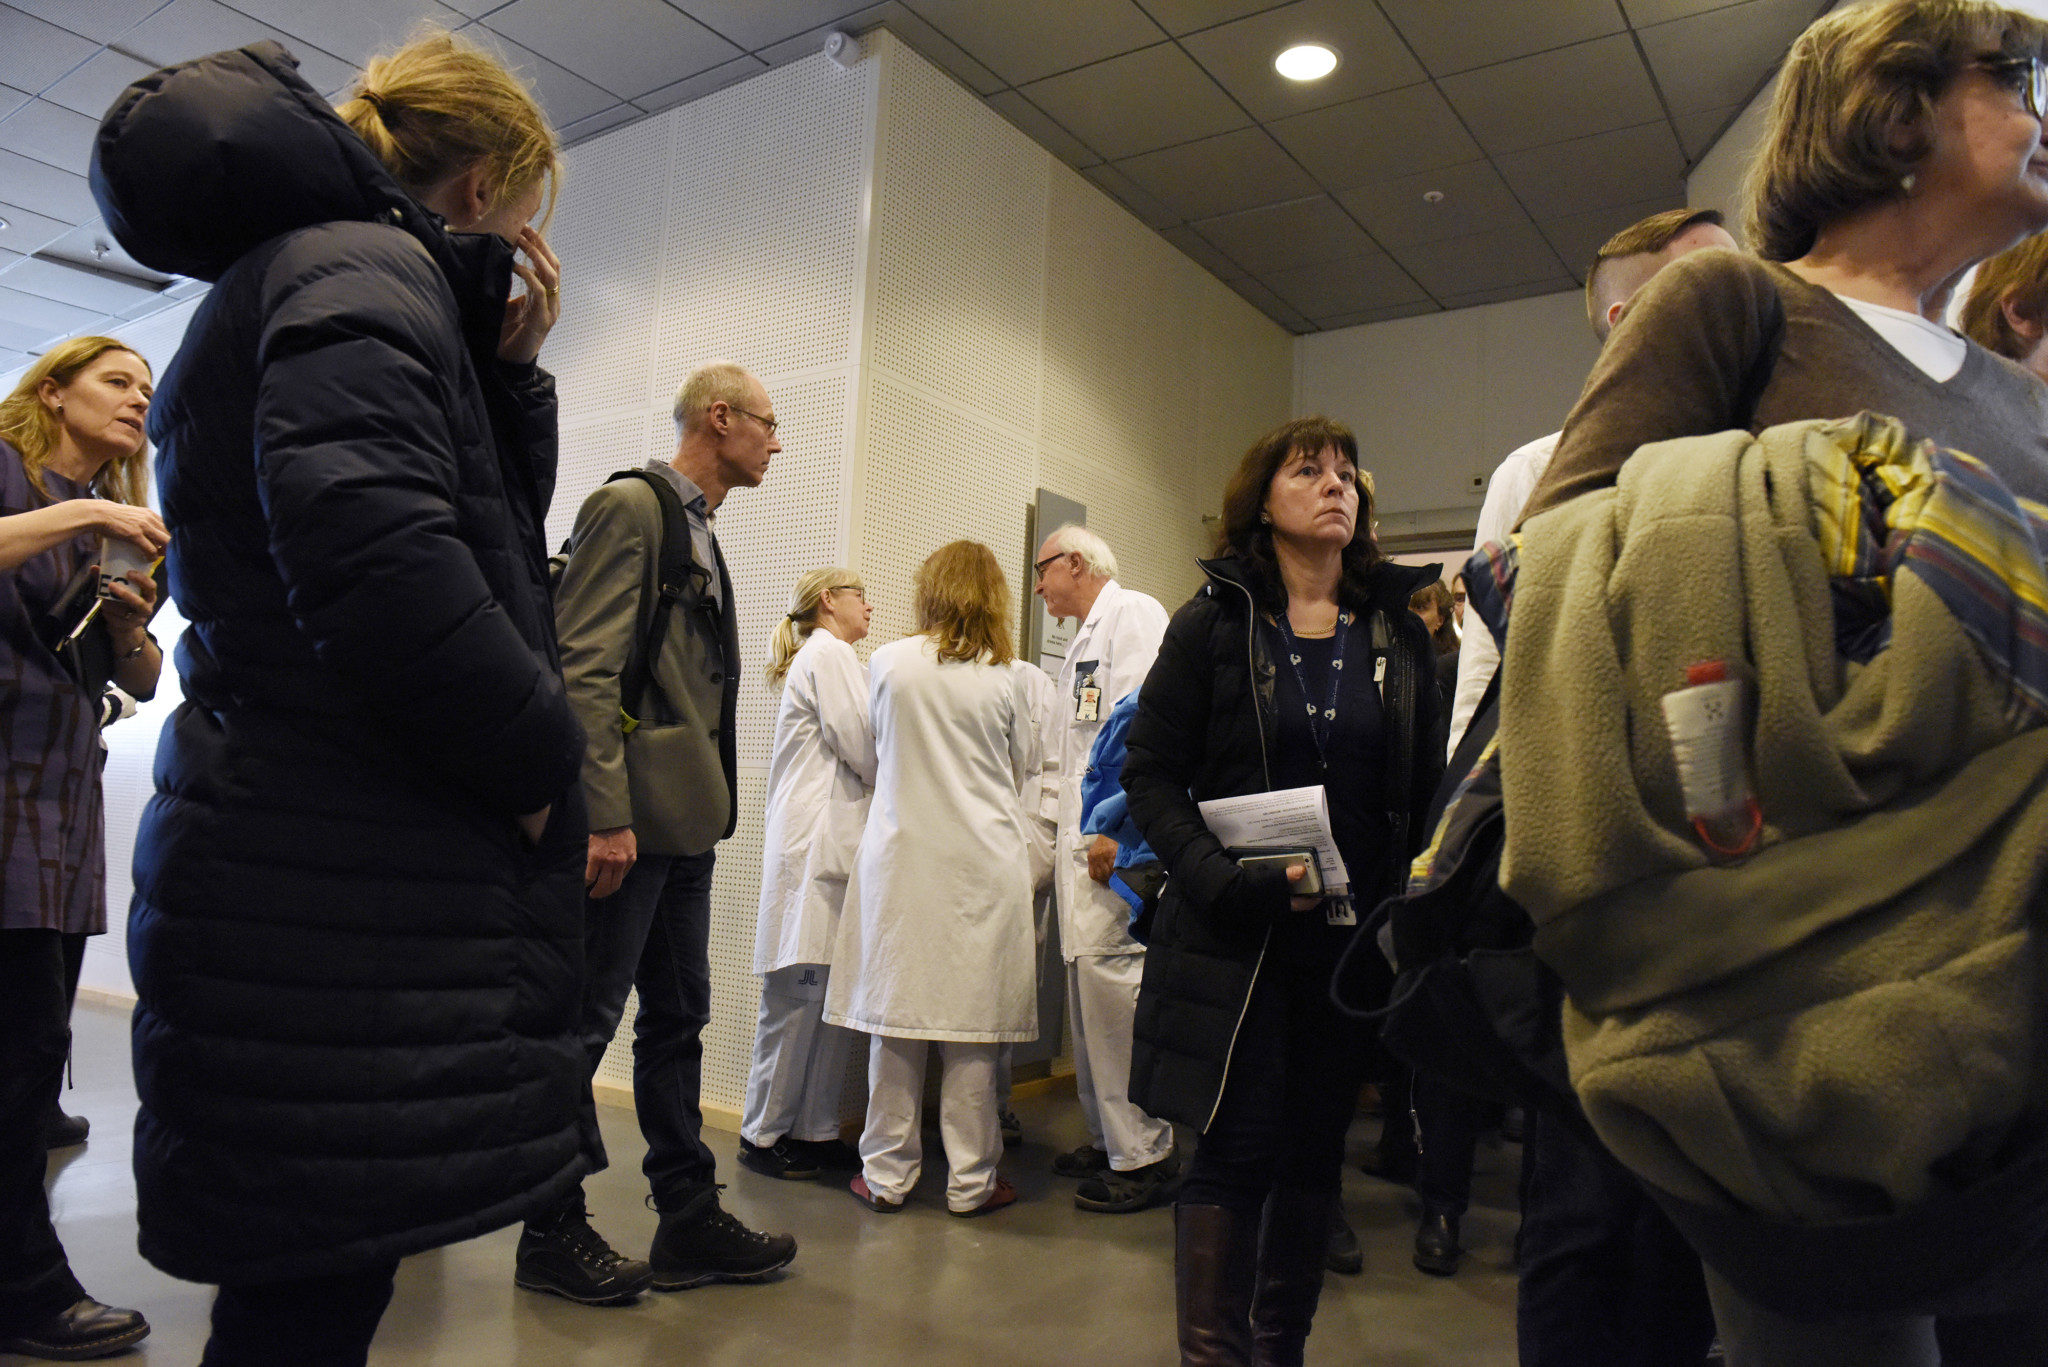 Da flere i ledelsen ved Karolinska Institutet måtte gå av, ble det arrangert stormøte blant opprørte ansatte. (Foto: Janerik Henriksson/TT Nyhetsbyrån/NTB Scanpix)